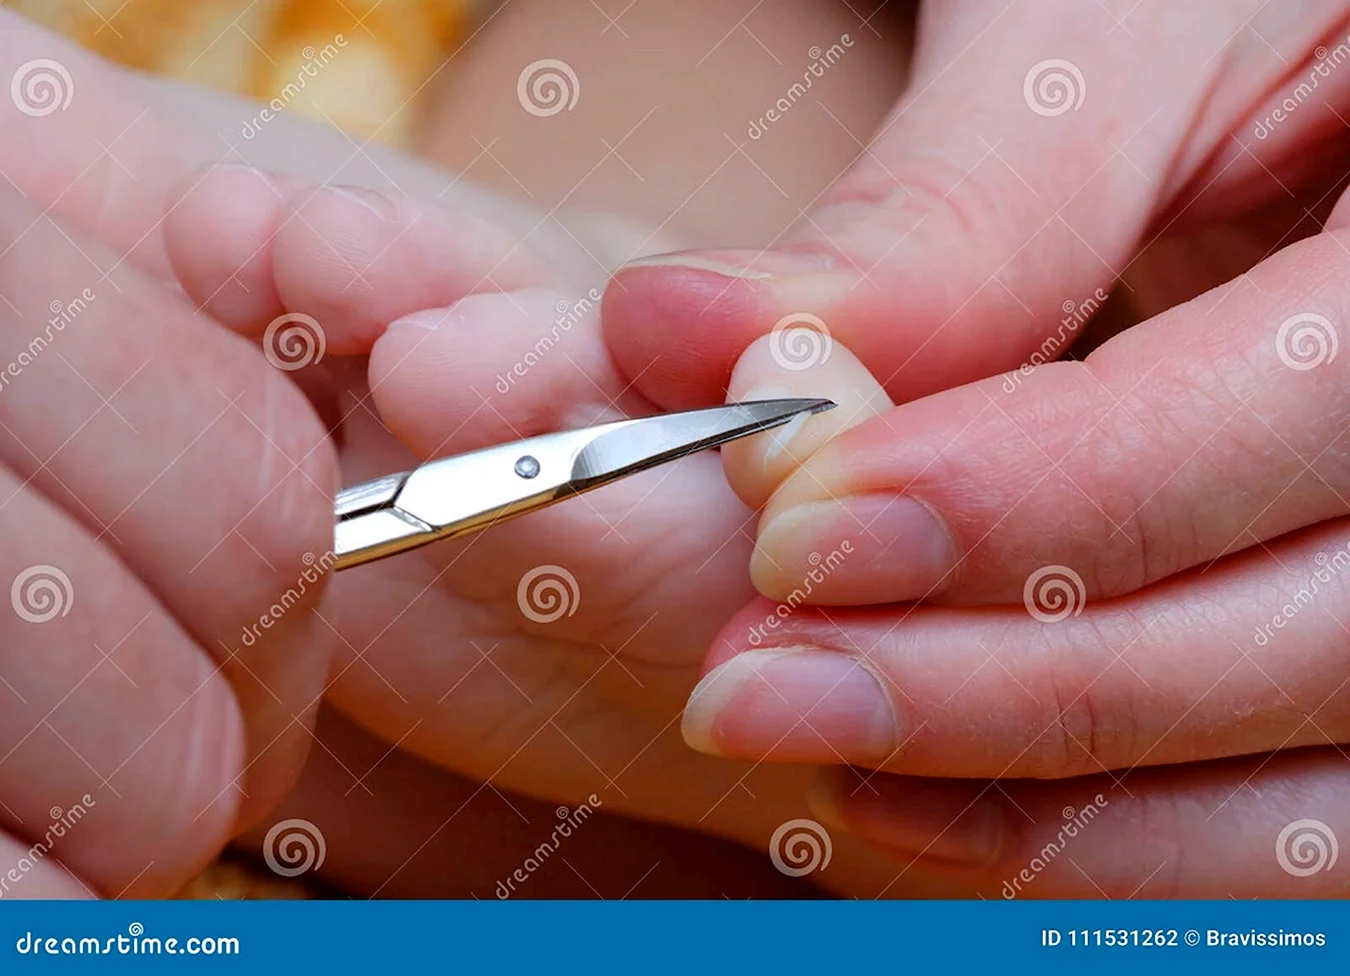 Стрижет садовыми ножницами ногти на руках